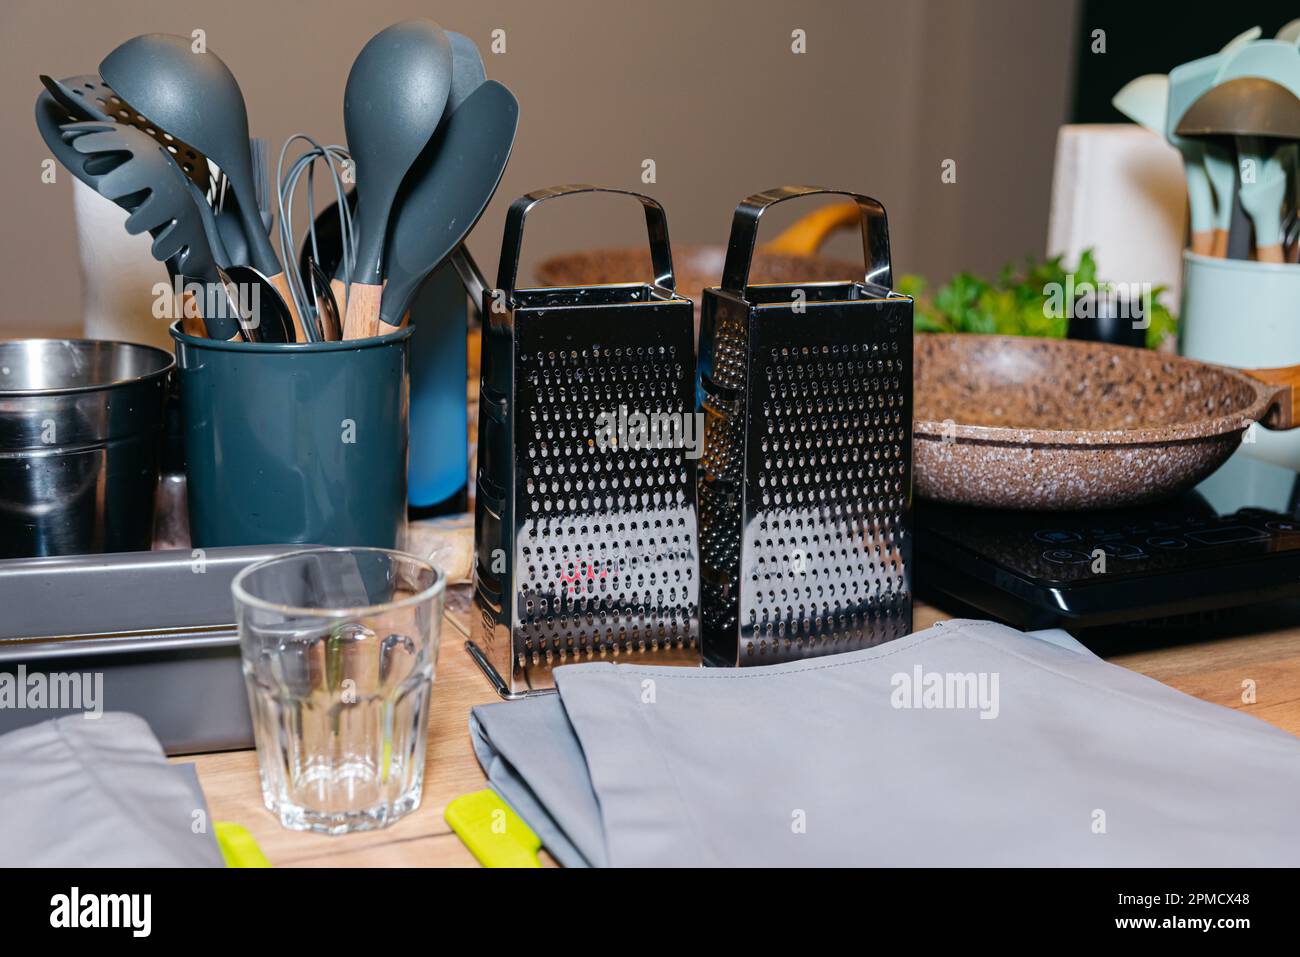 Les ustensiles de cuisine et les outils comme les spatules ou le fouet, le tablier gris et deux râpes en acier à main sont assis sur une table avant le cours de cuisine. Maître culinaire cla Banque D'Images